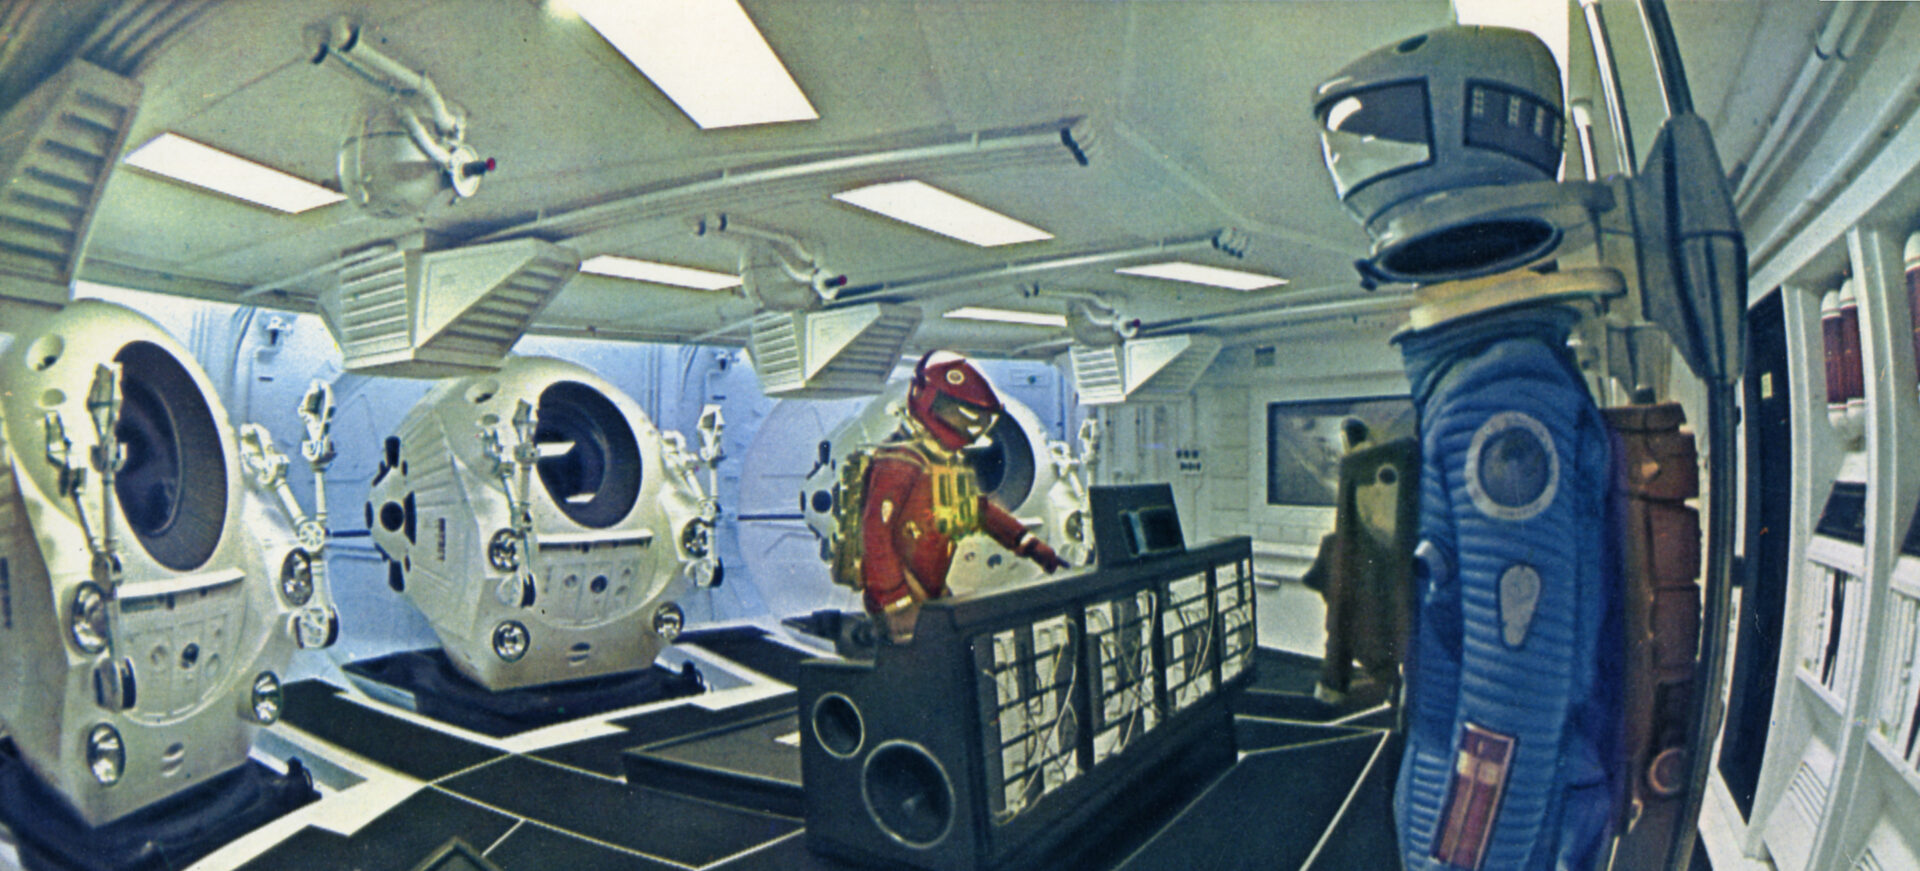 2001 a space odyssey 7 Kubrick